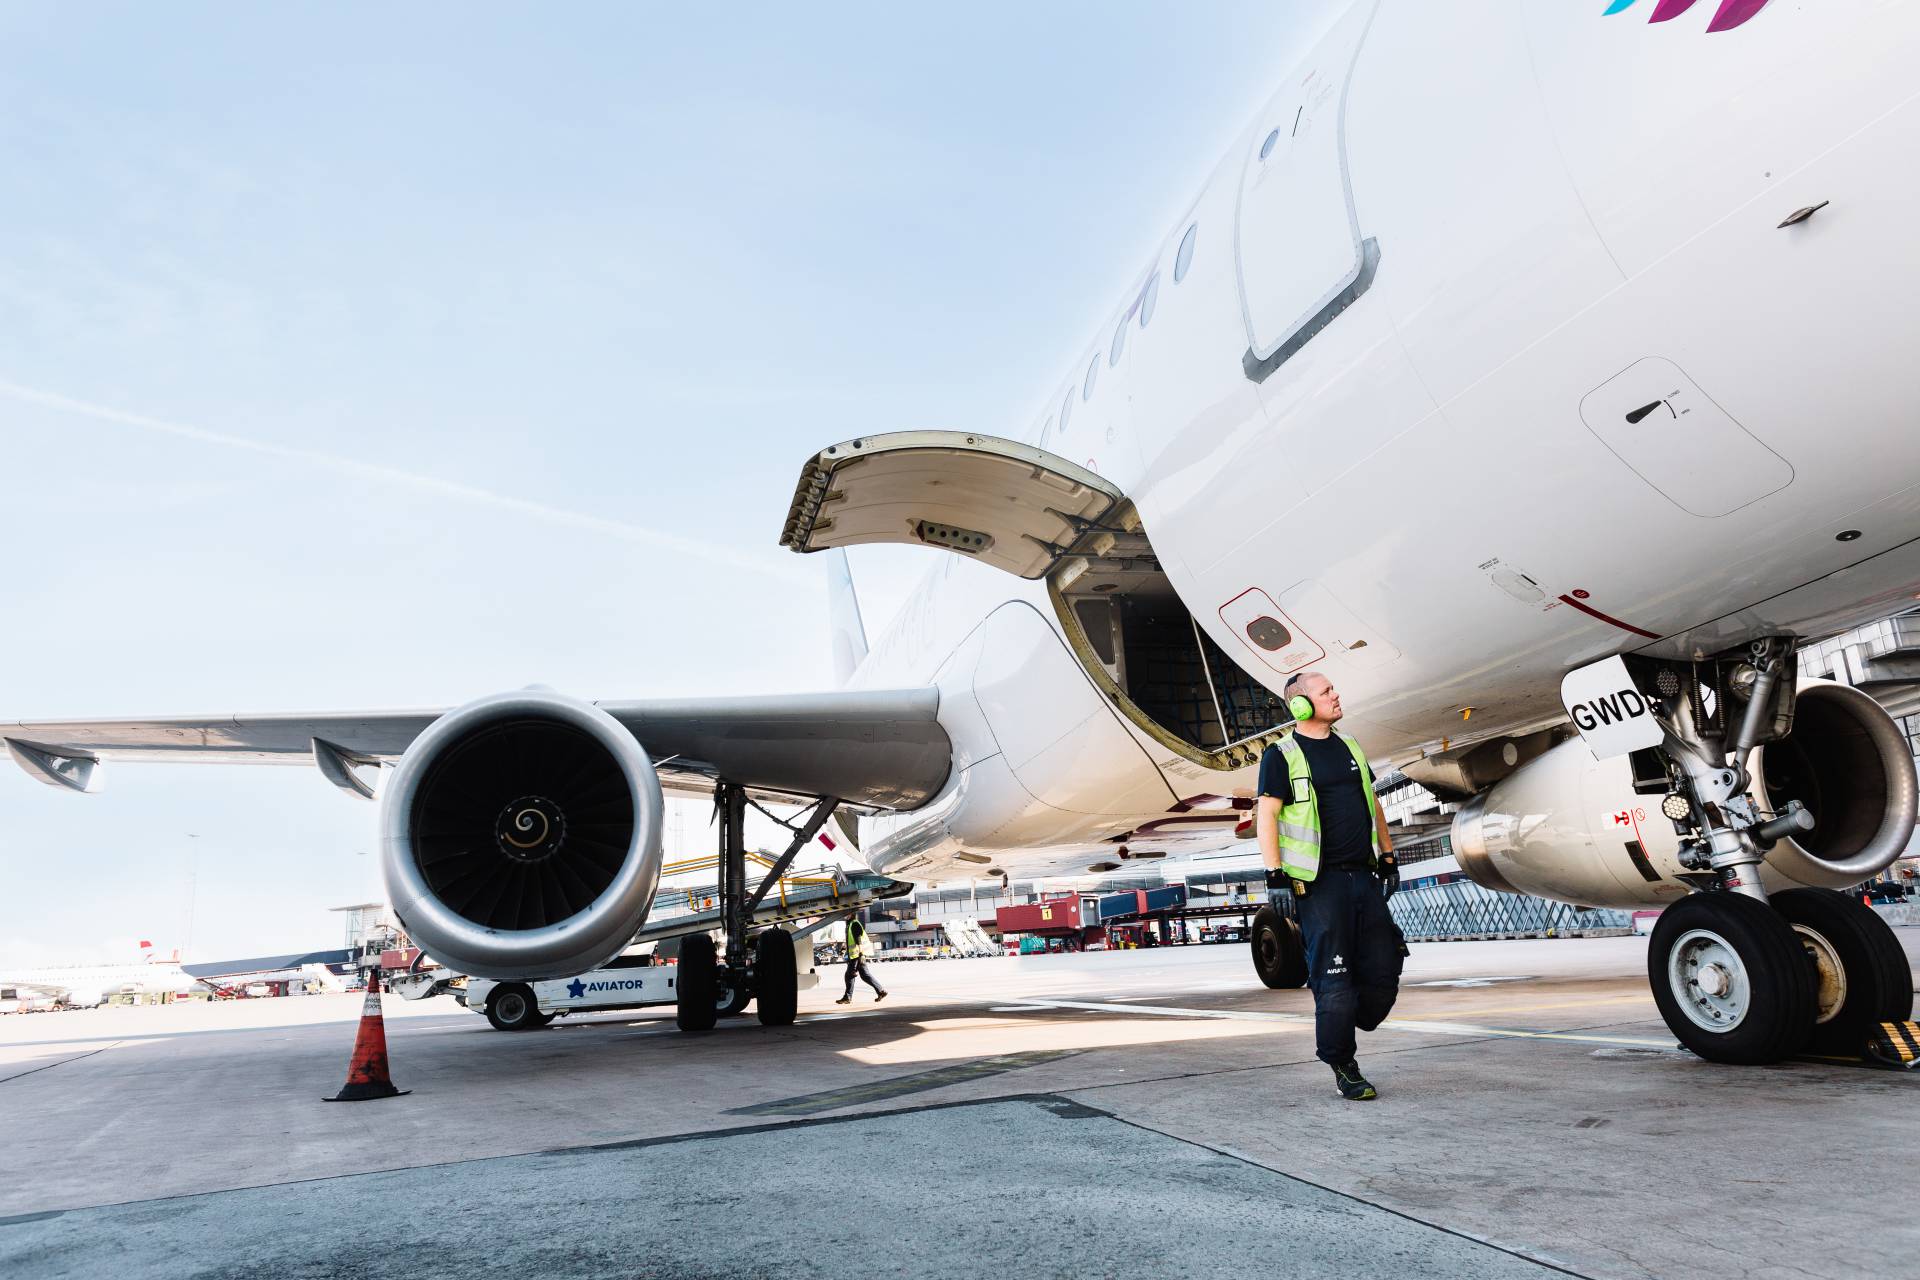 L'agente di assistenza Aviator estende la partnership con Finnair per altri 5 anni all'aeroporto di Helsinki